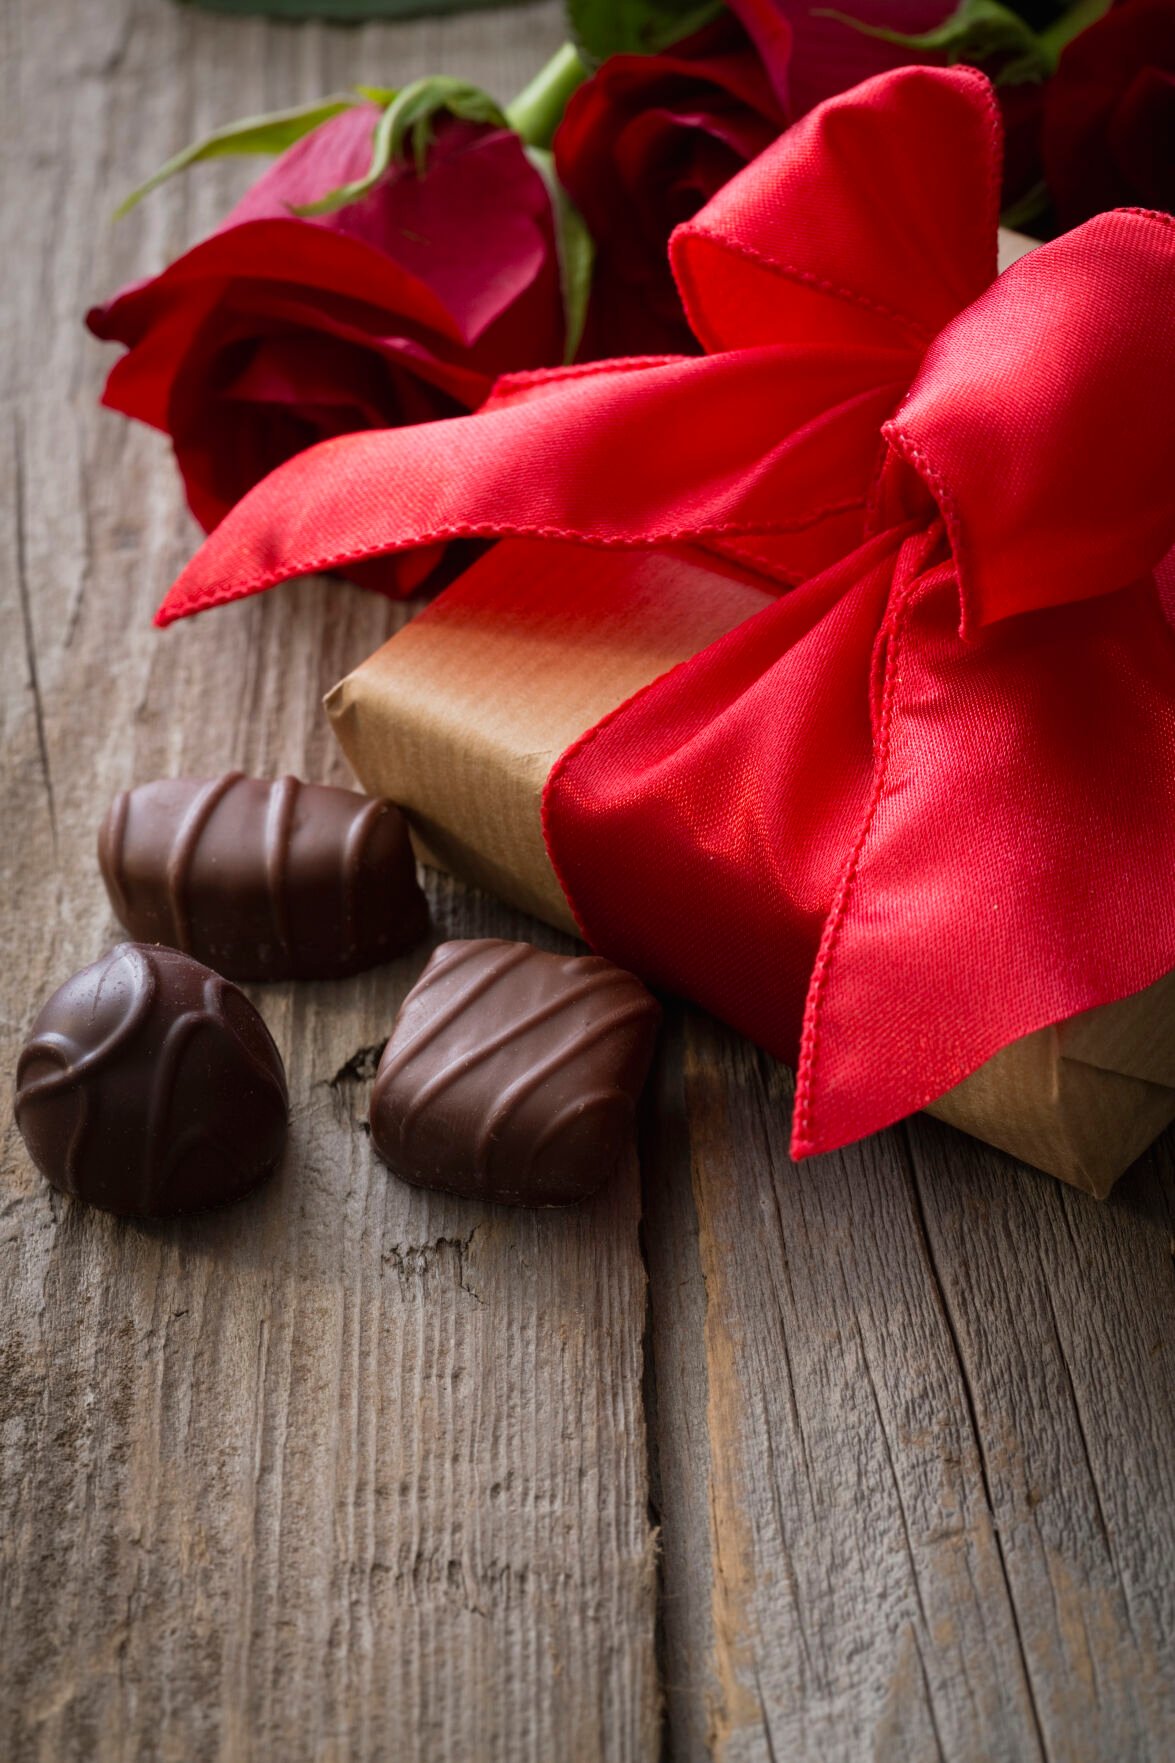 Kas sõbrapäeva šokolaad on tervislik või ebatervislik?  Pilk tervise ja vormisoleku aspektidele |  Funktsioonid